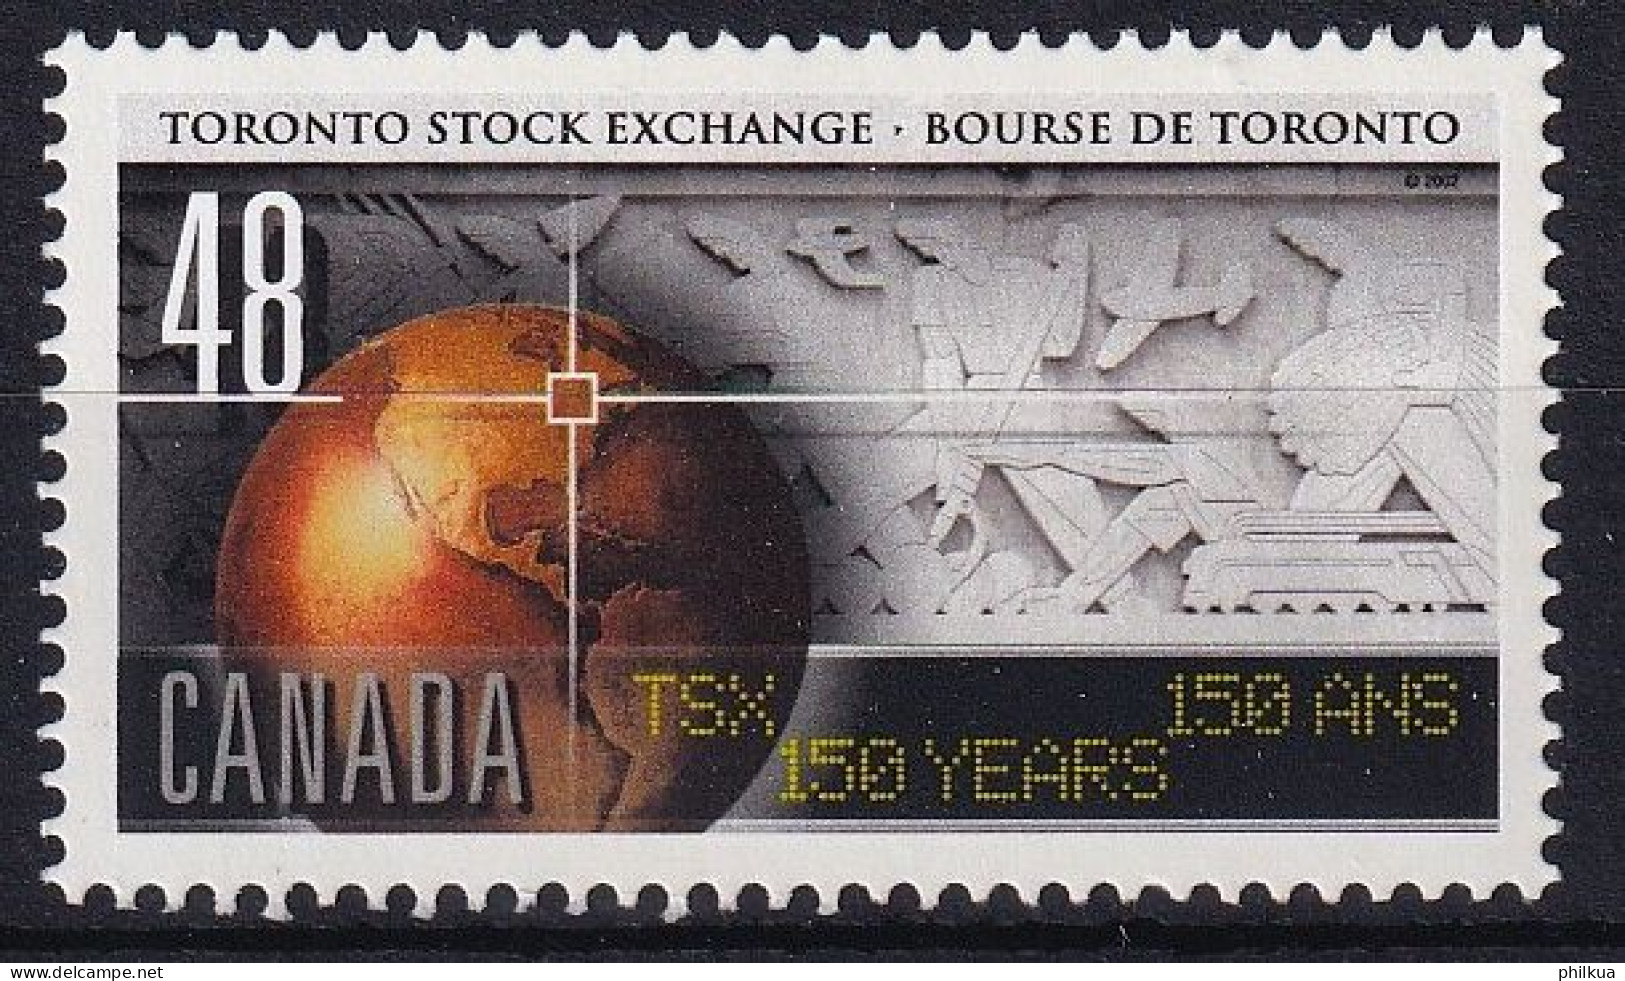 MiNr. 2083 Kanada (Dominion) 2002, 24. Okt. 150 Jahre Börse Toronto - Postfrisch/**/MNH - Ungebraucht